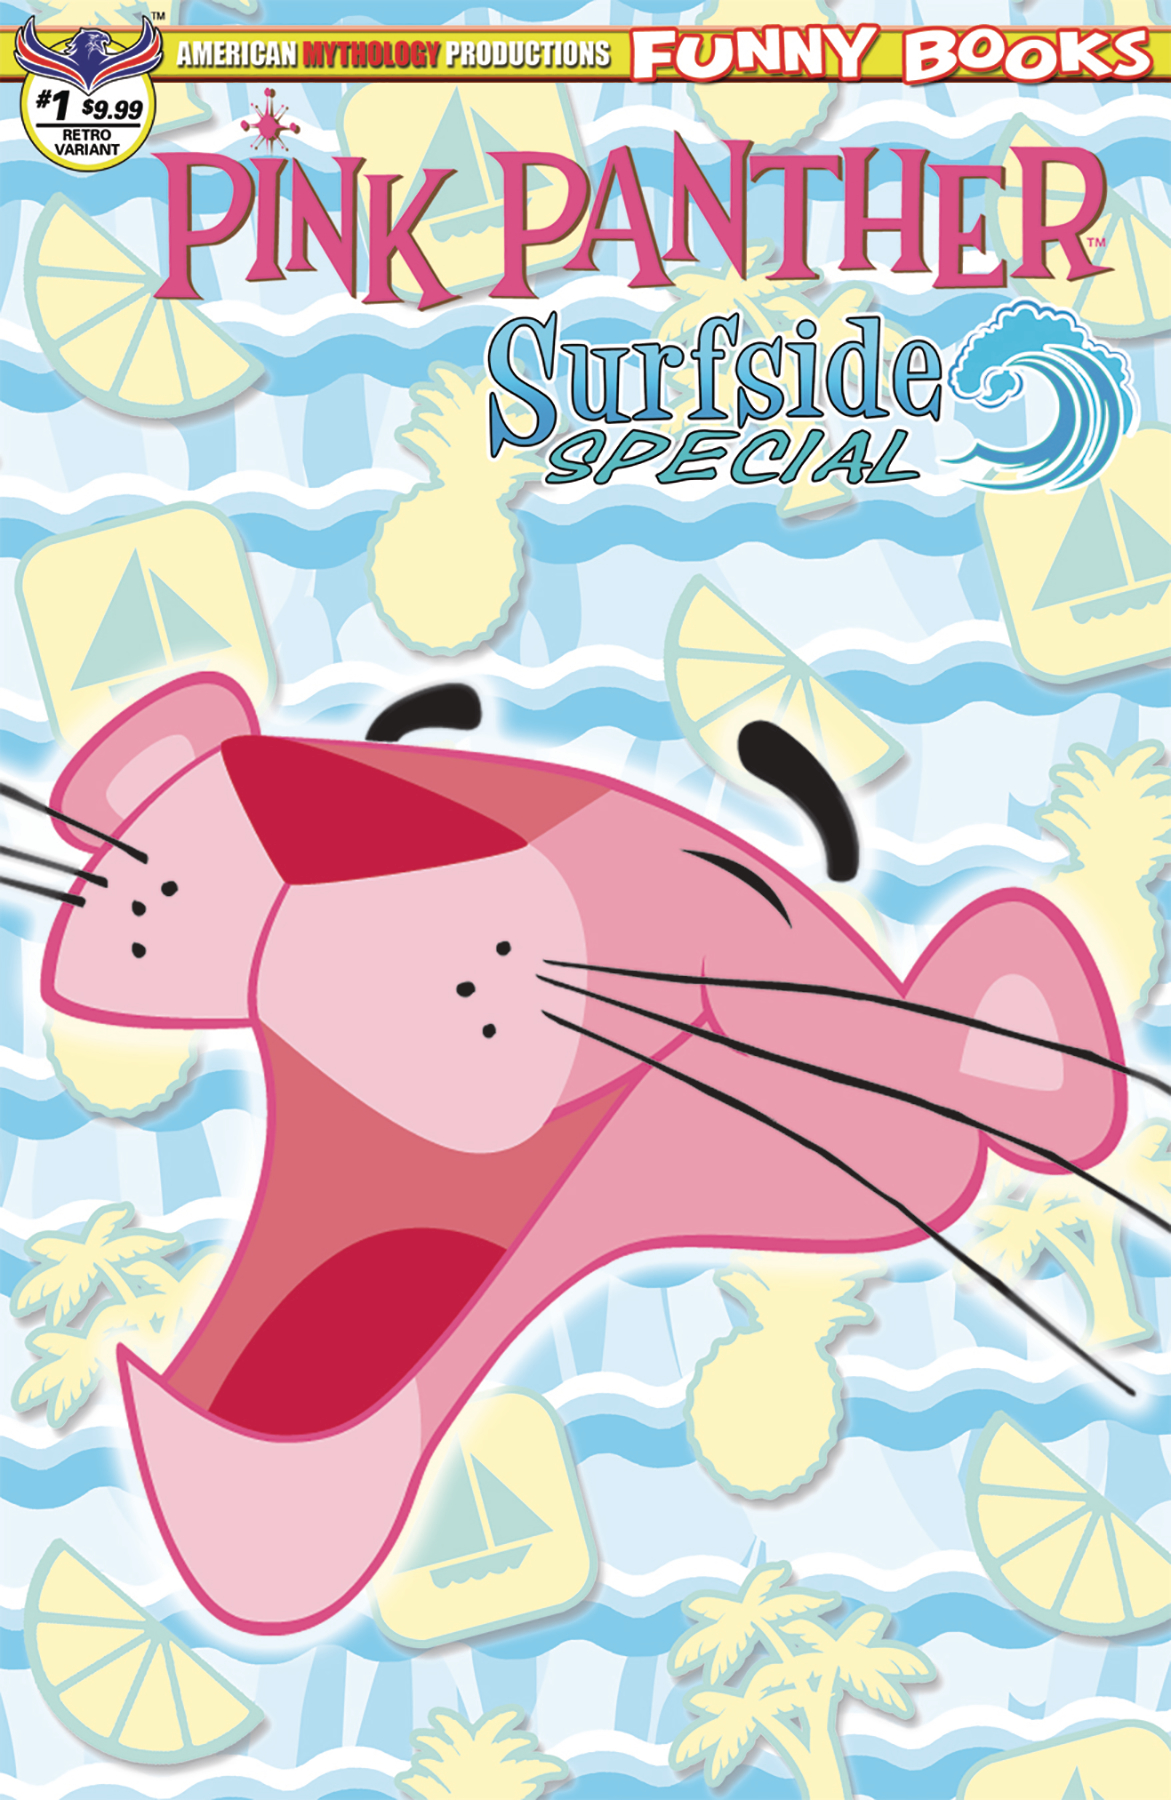 PINK PANTHER SURFSIDE SPECIAL #1 RETRO ANIMATION LTD ED CVR